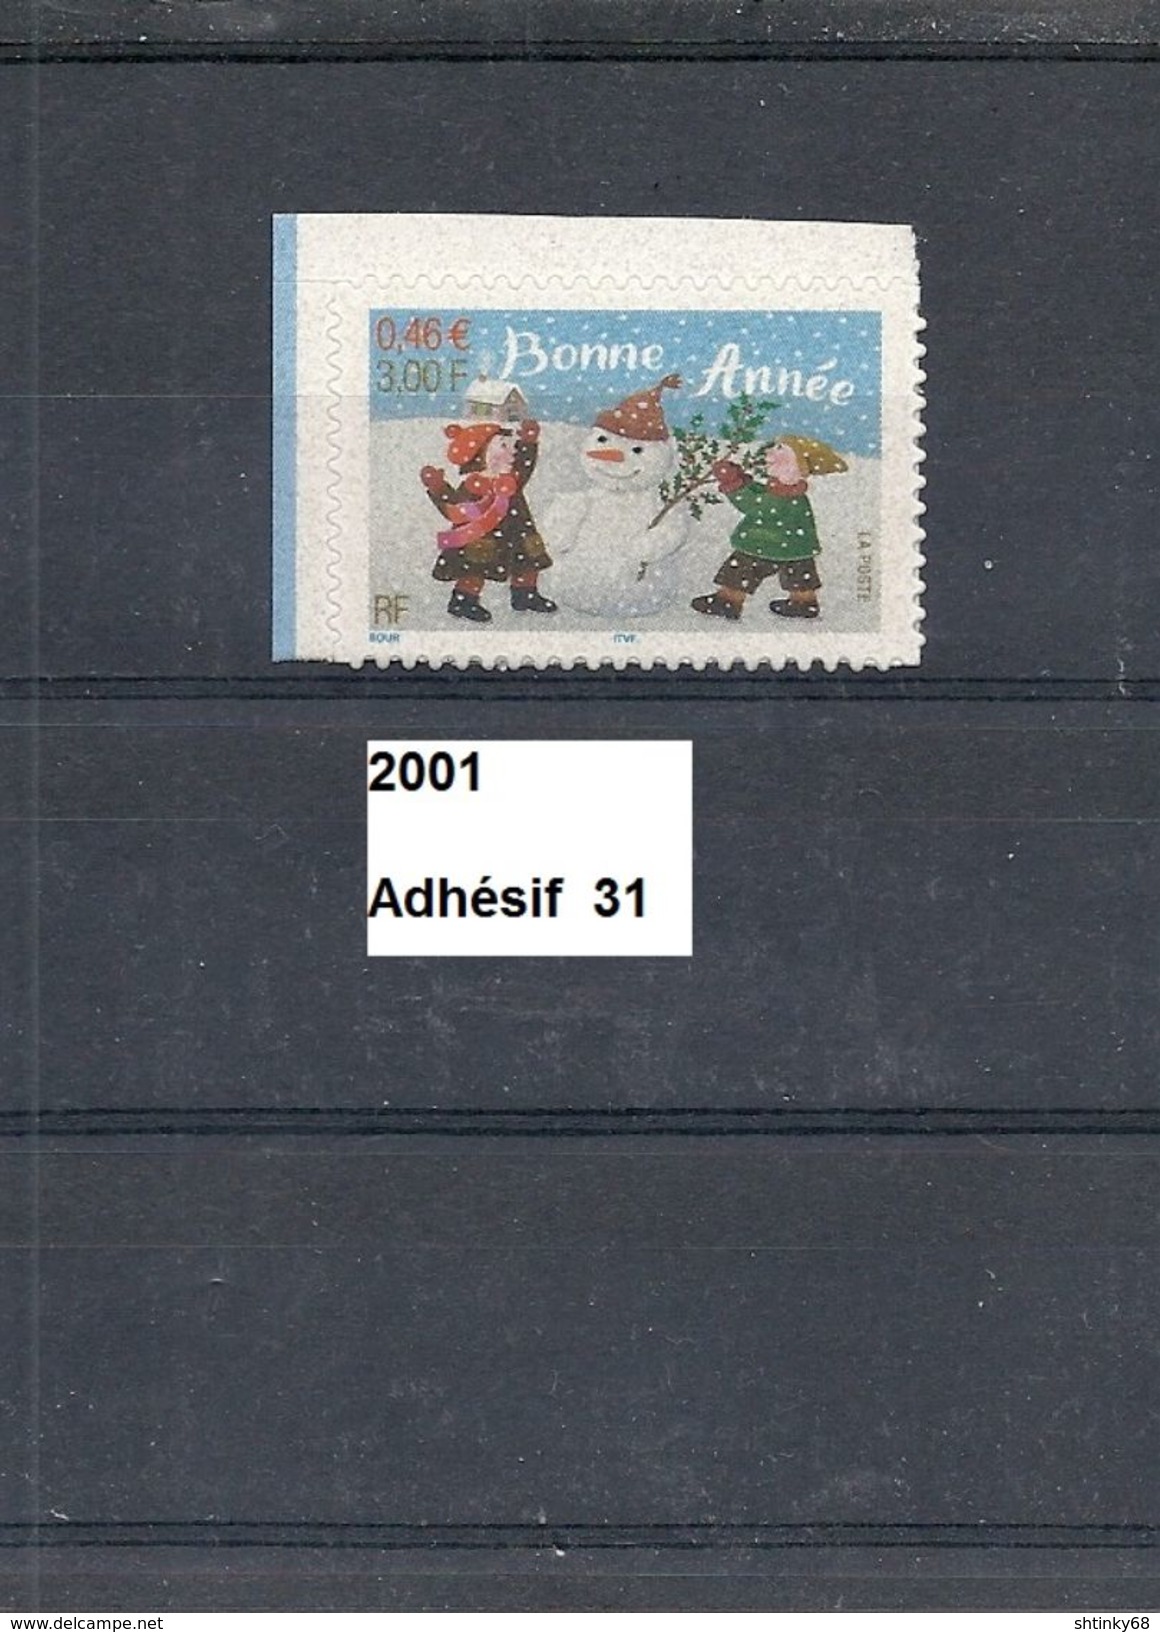 Adhésif De 2001 Neuf**  Y&T  N° Adh 31 (3437) - Neufs